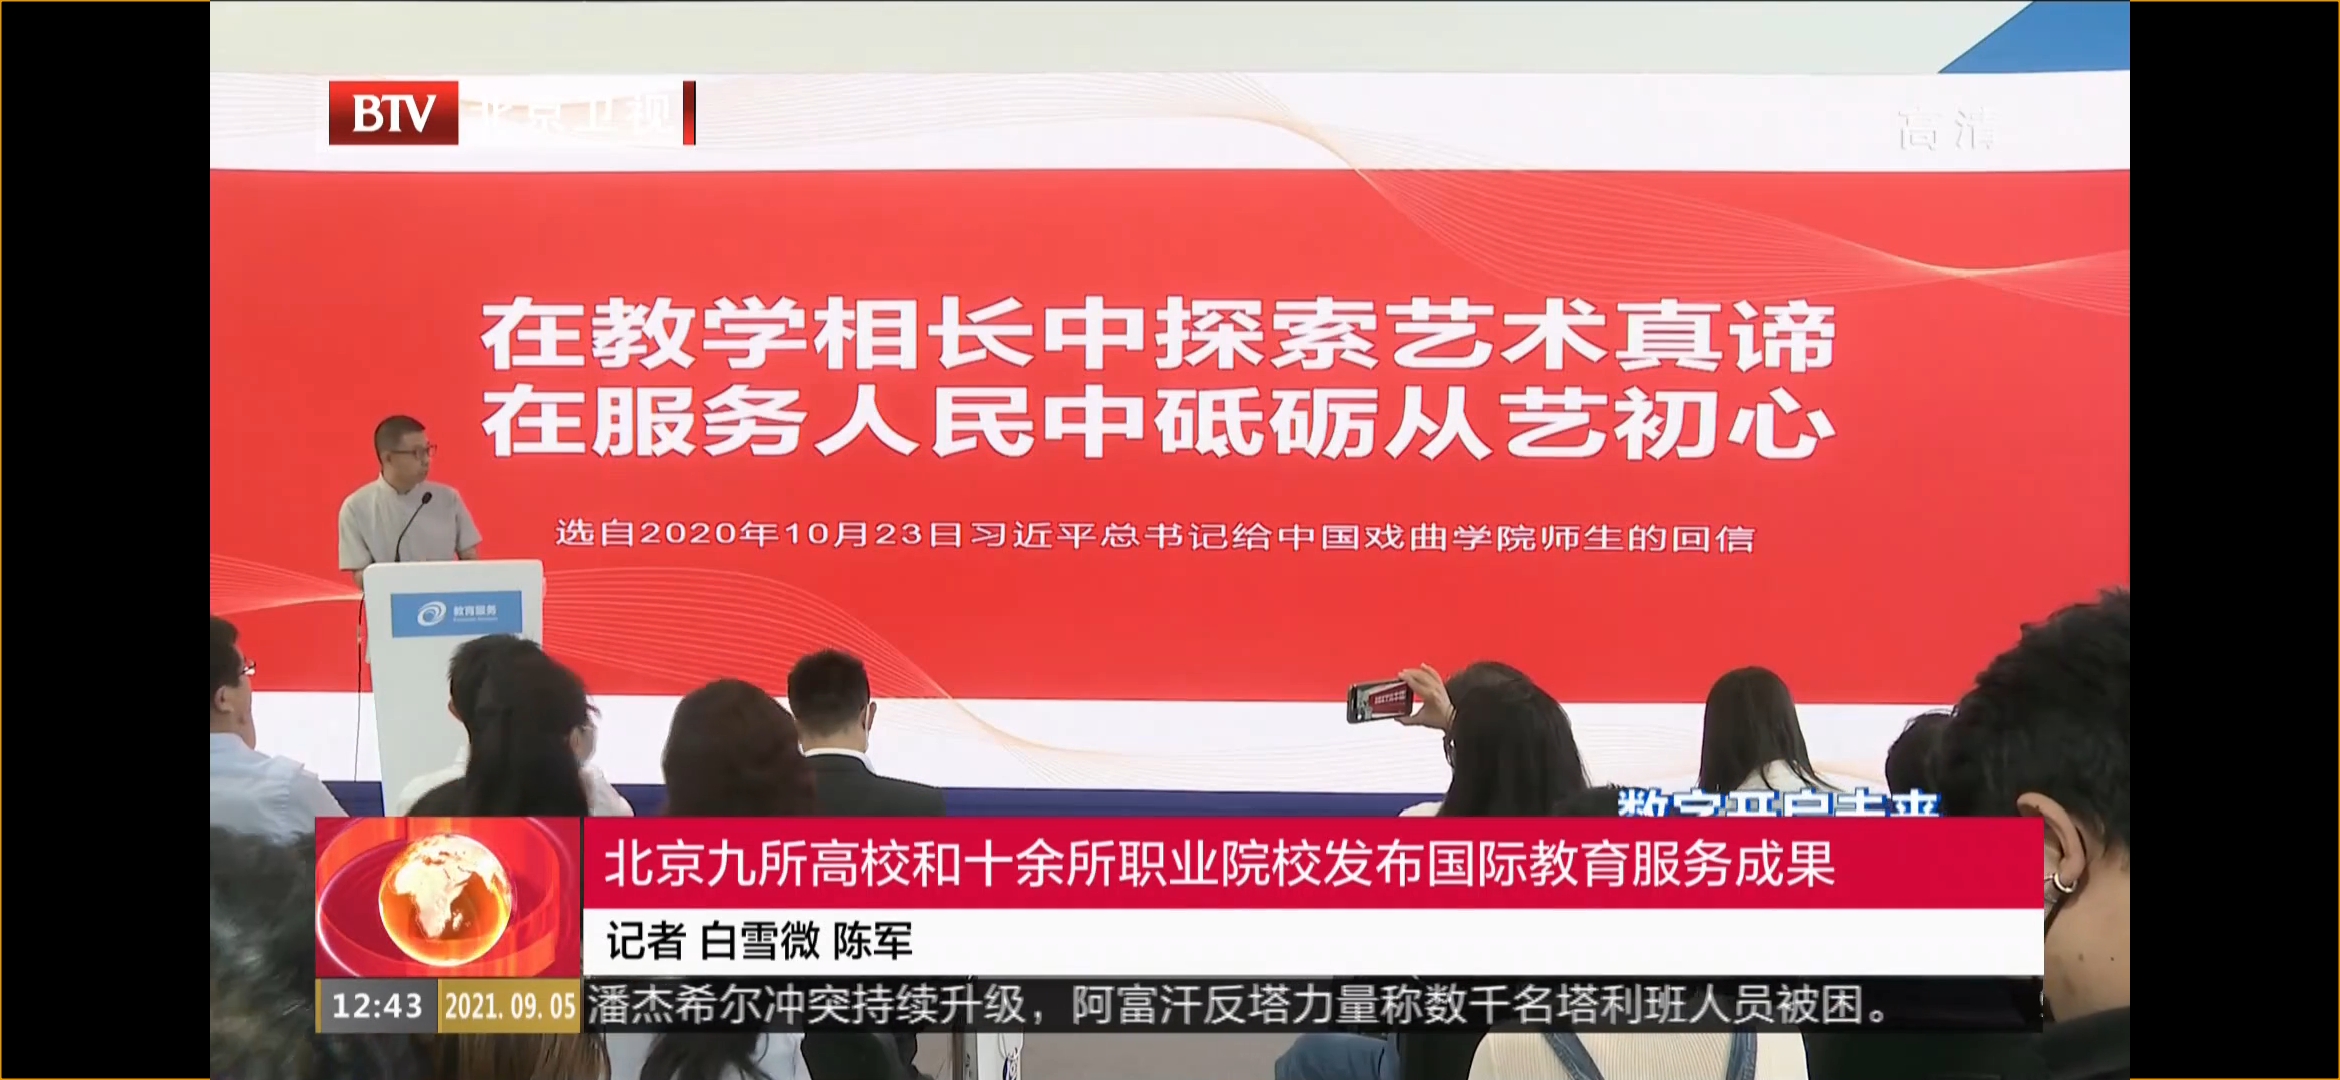 北京卫视截图.jpg